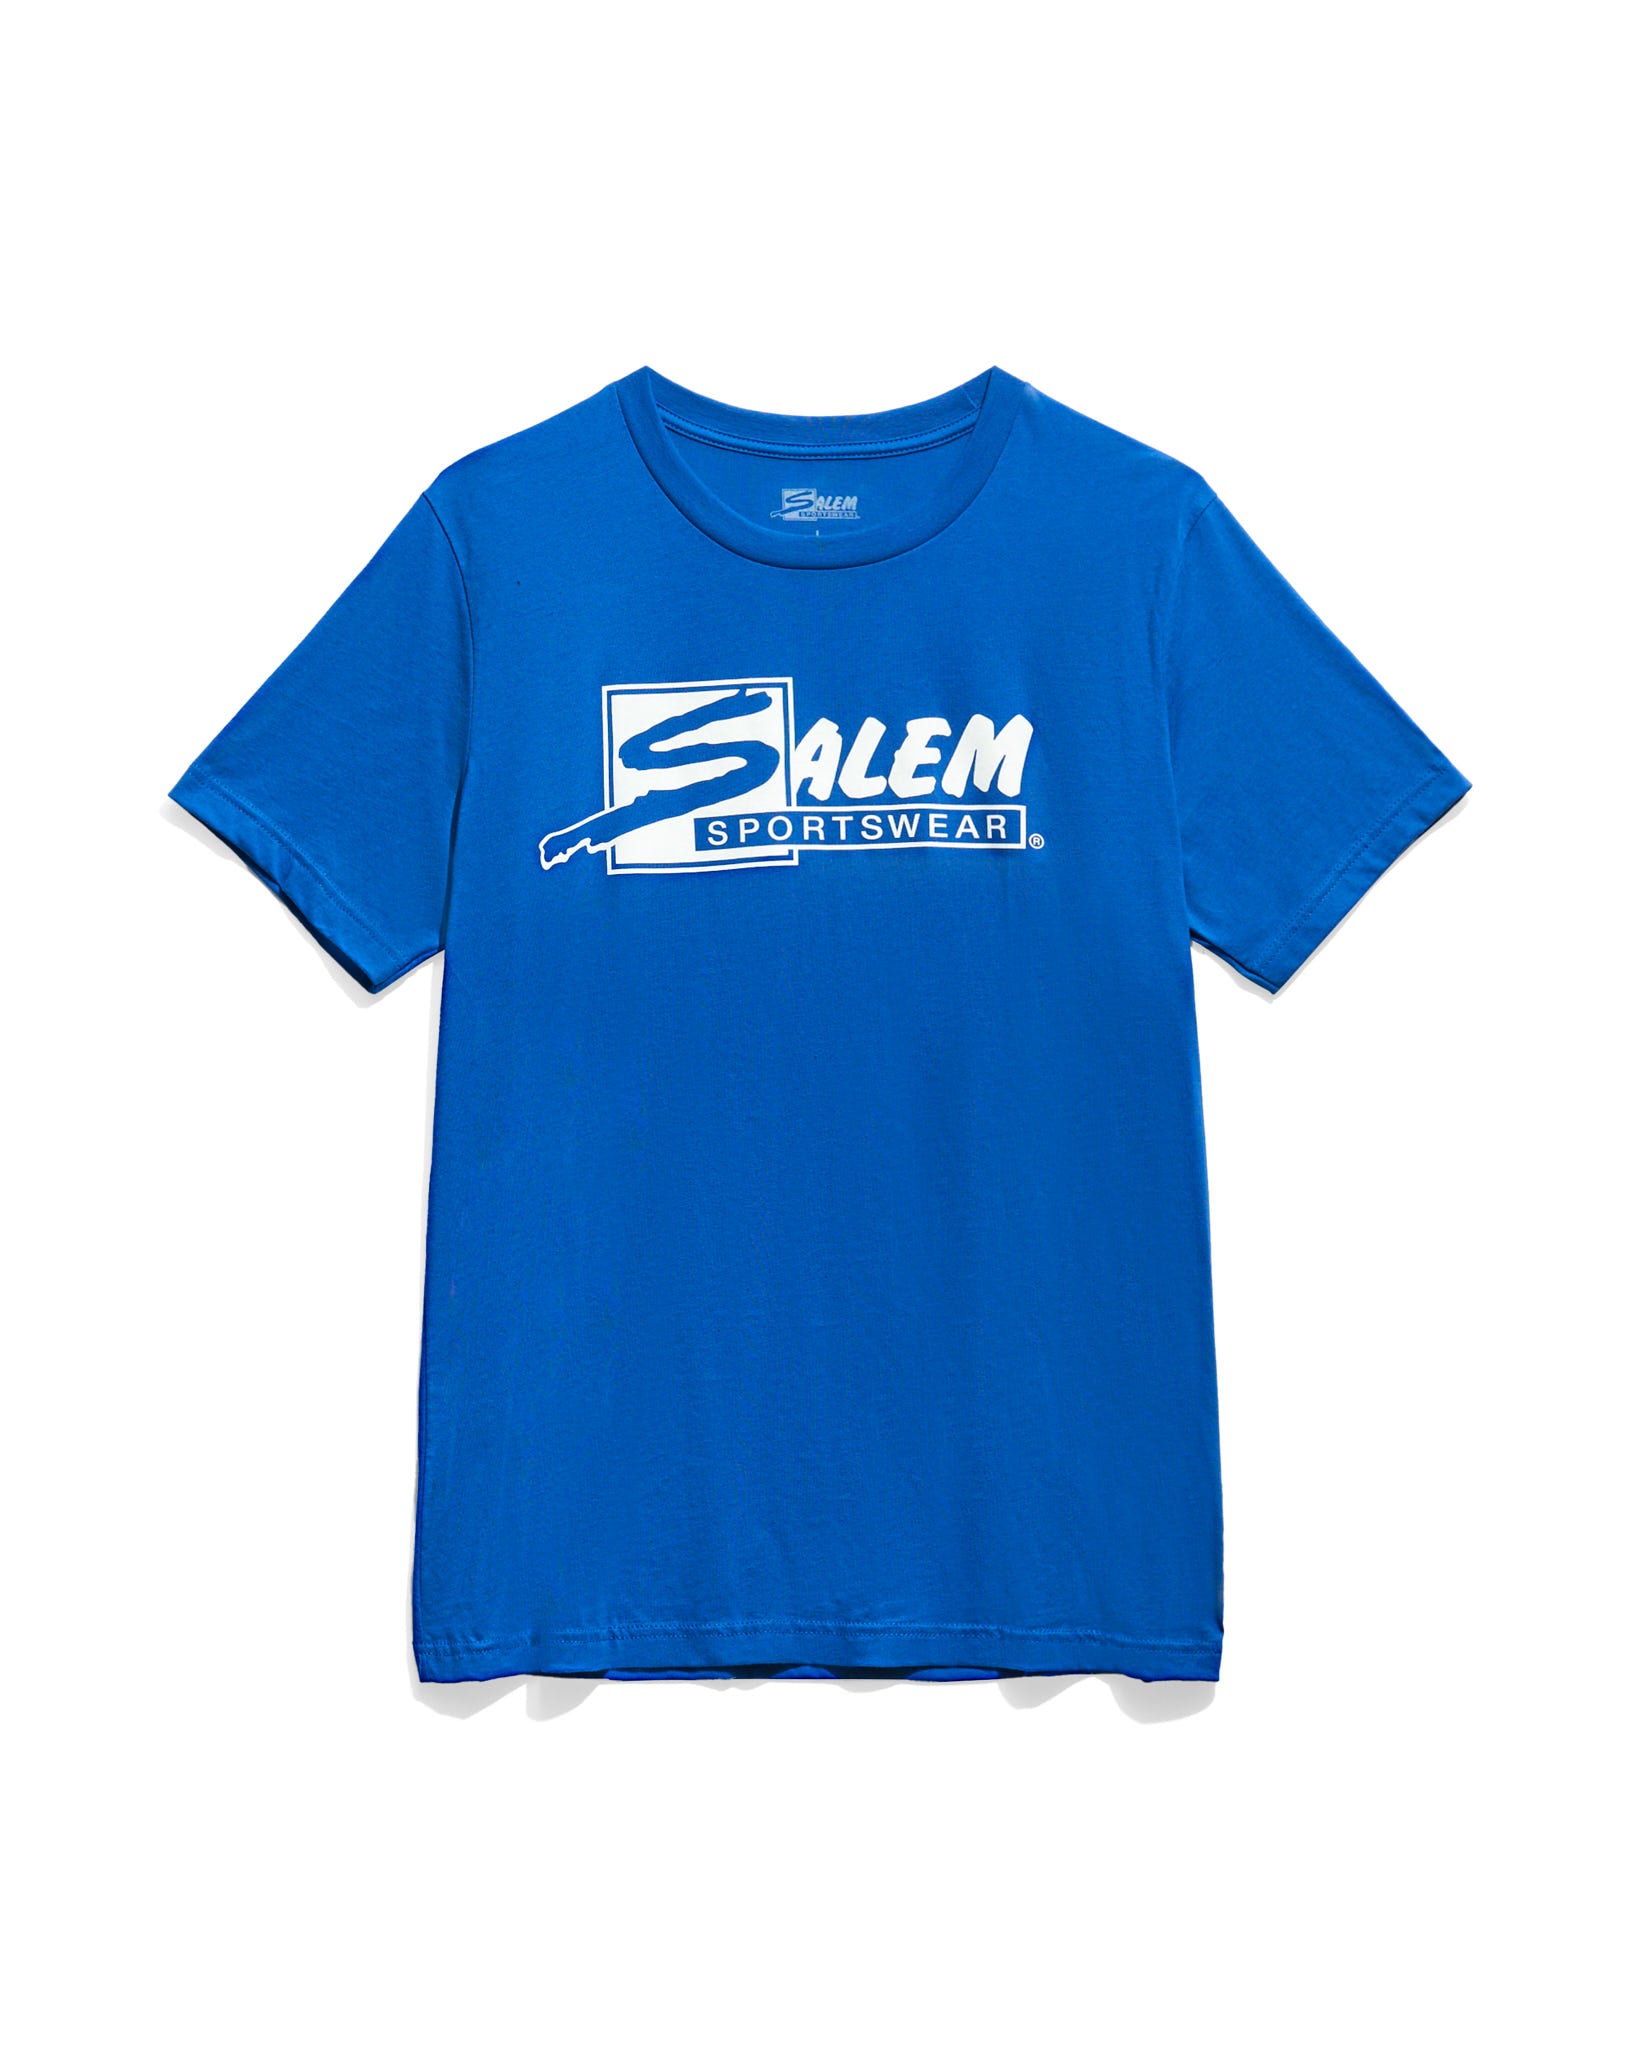 Salem Sportswear Steve T-Shirts for Men